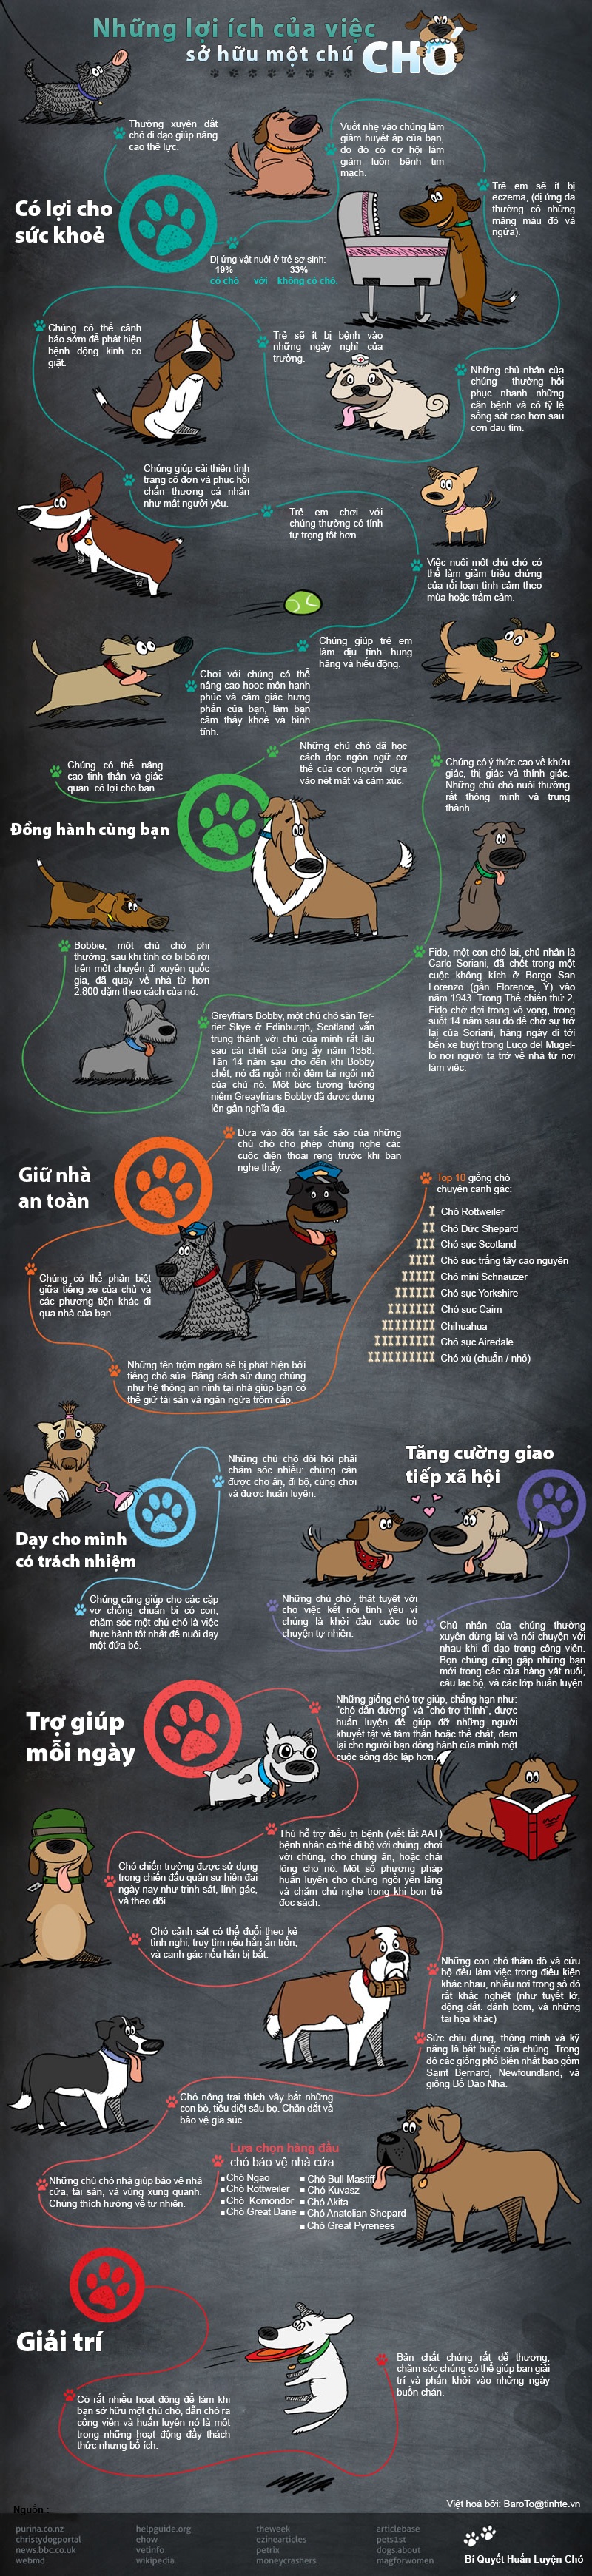 Infographic - 38 lợi ích từ việc nuôi chó 